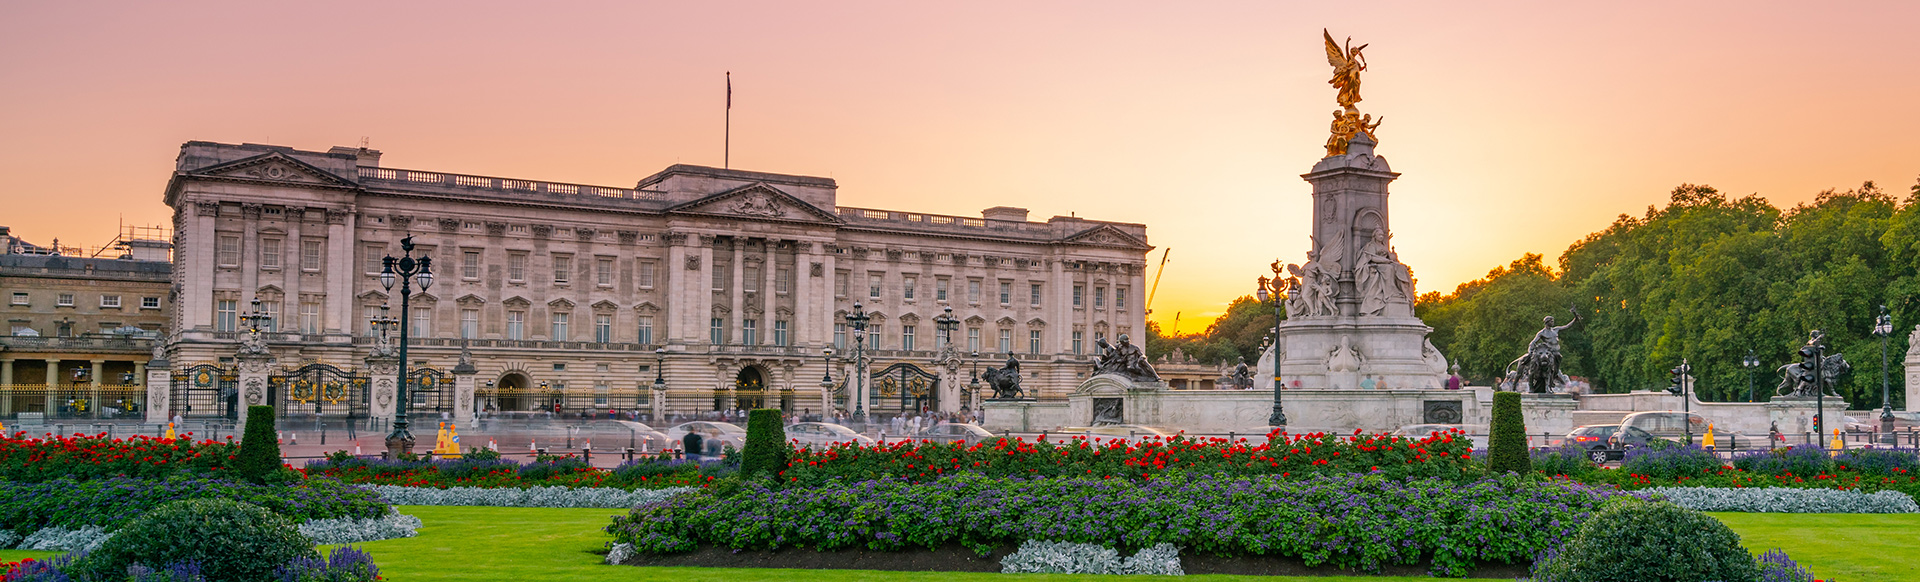 Le Palais de Buckingham et ses jardins par un coucher de soleil